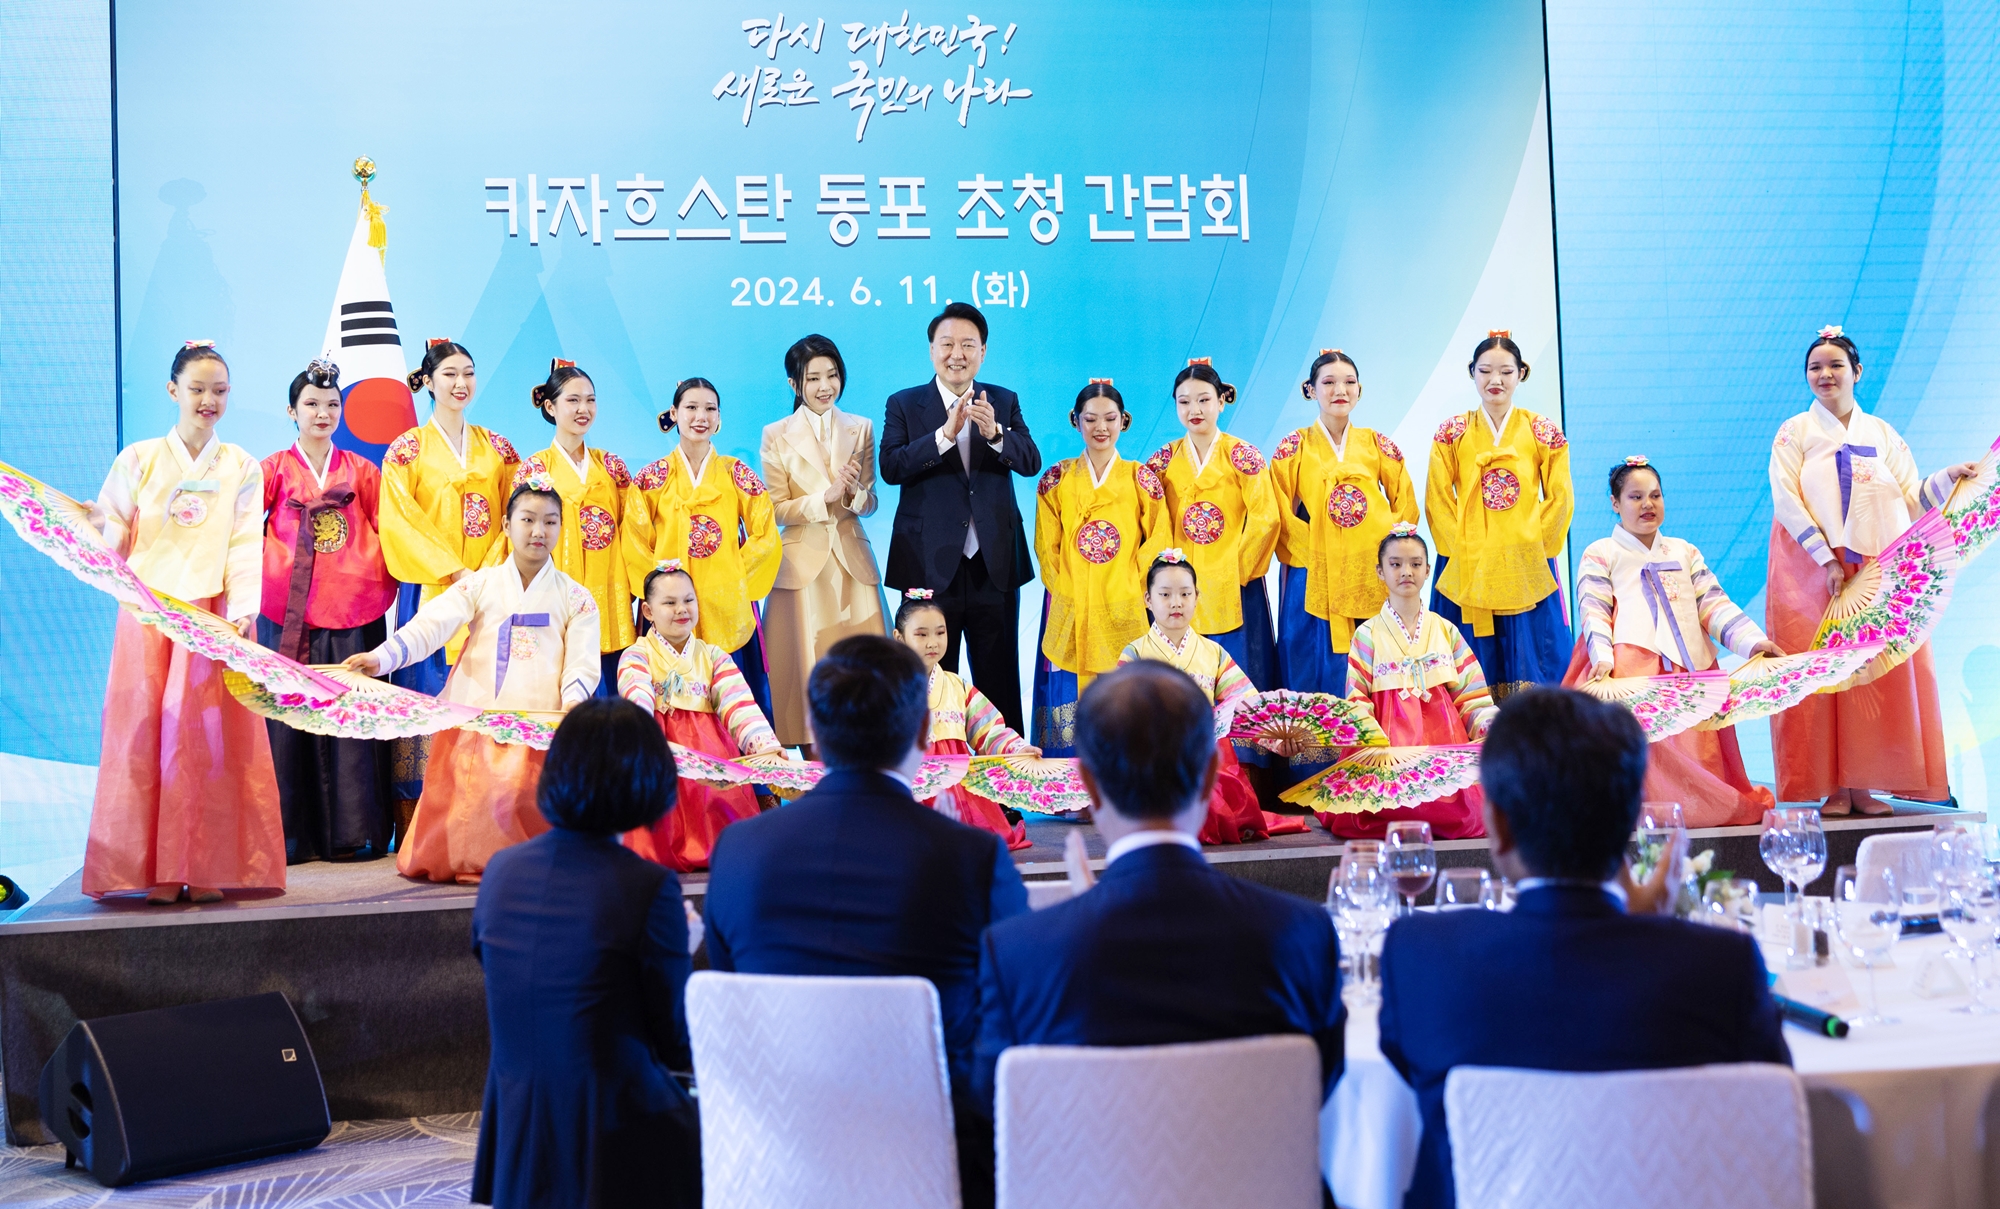 Президент РК Юн Сок Ёль и первая леди Ким Гон Хи, прибывшие в Казахстан с государственным визитом, 11 июня позируют для фото с танцевальной группой на встрече с корейской диаспорой в Астане. / Фото: Рёнхап